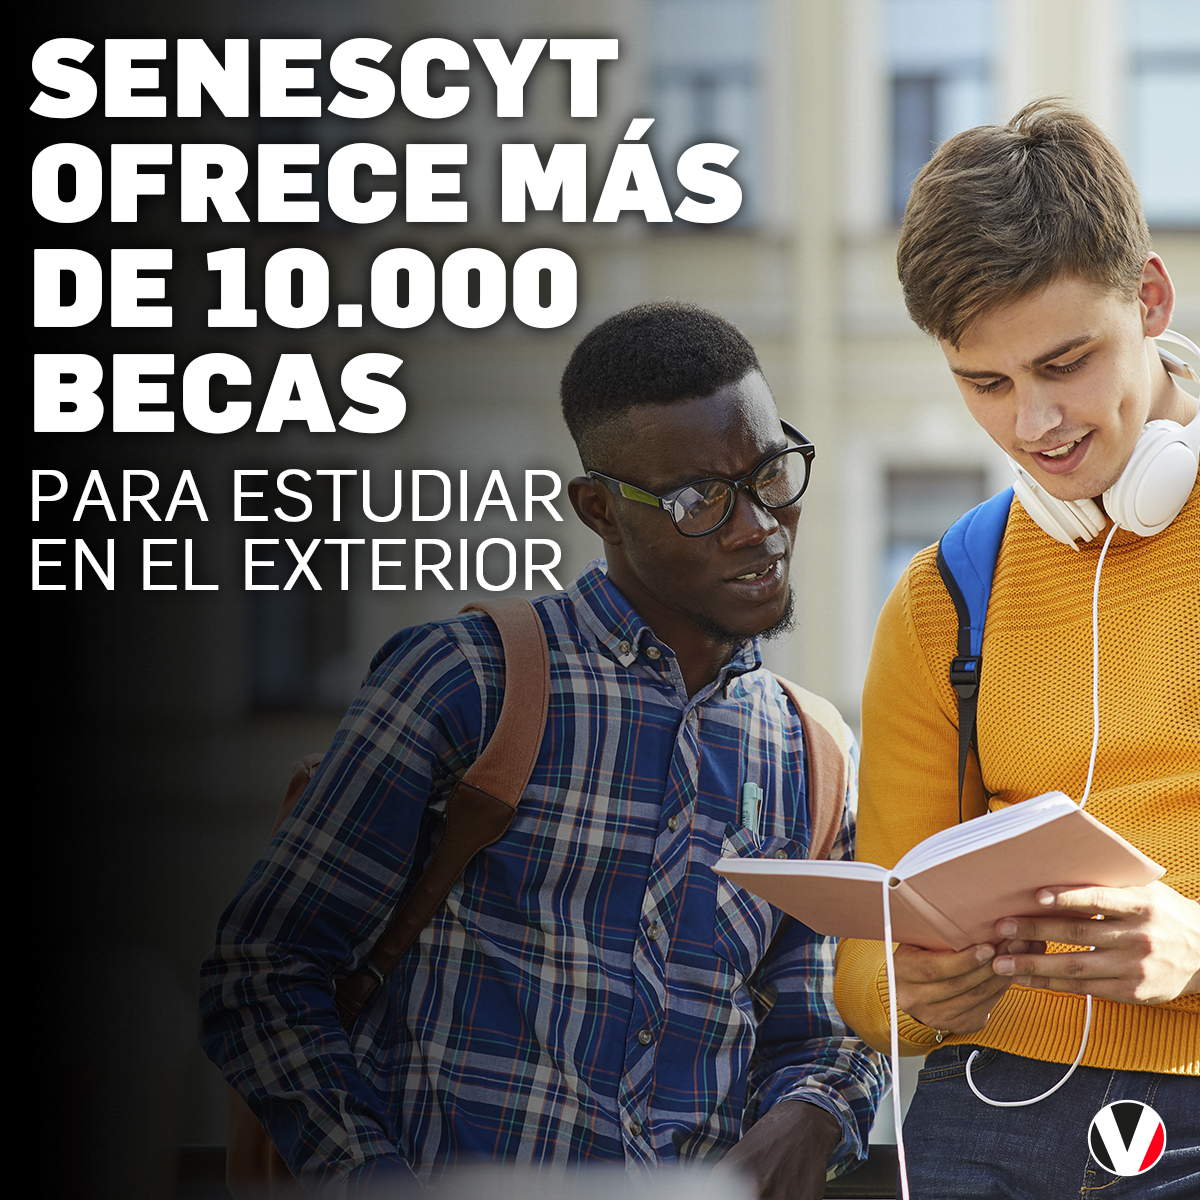 #LoMásLeído | La Senescyt ofrece más de 10.000 becas para estudiar en instituciones internacionales y nacionales. Estos son los países a los que puede aplicar: v.vistazo.com/4dmJDHx